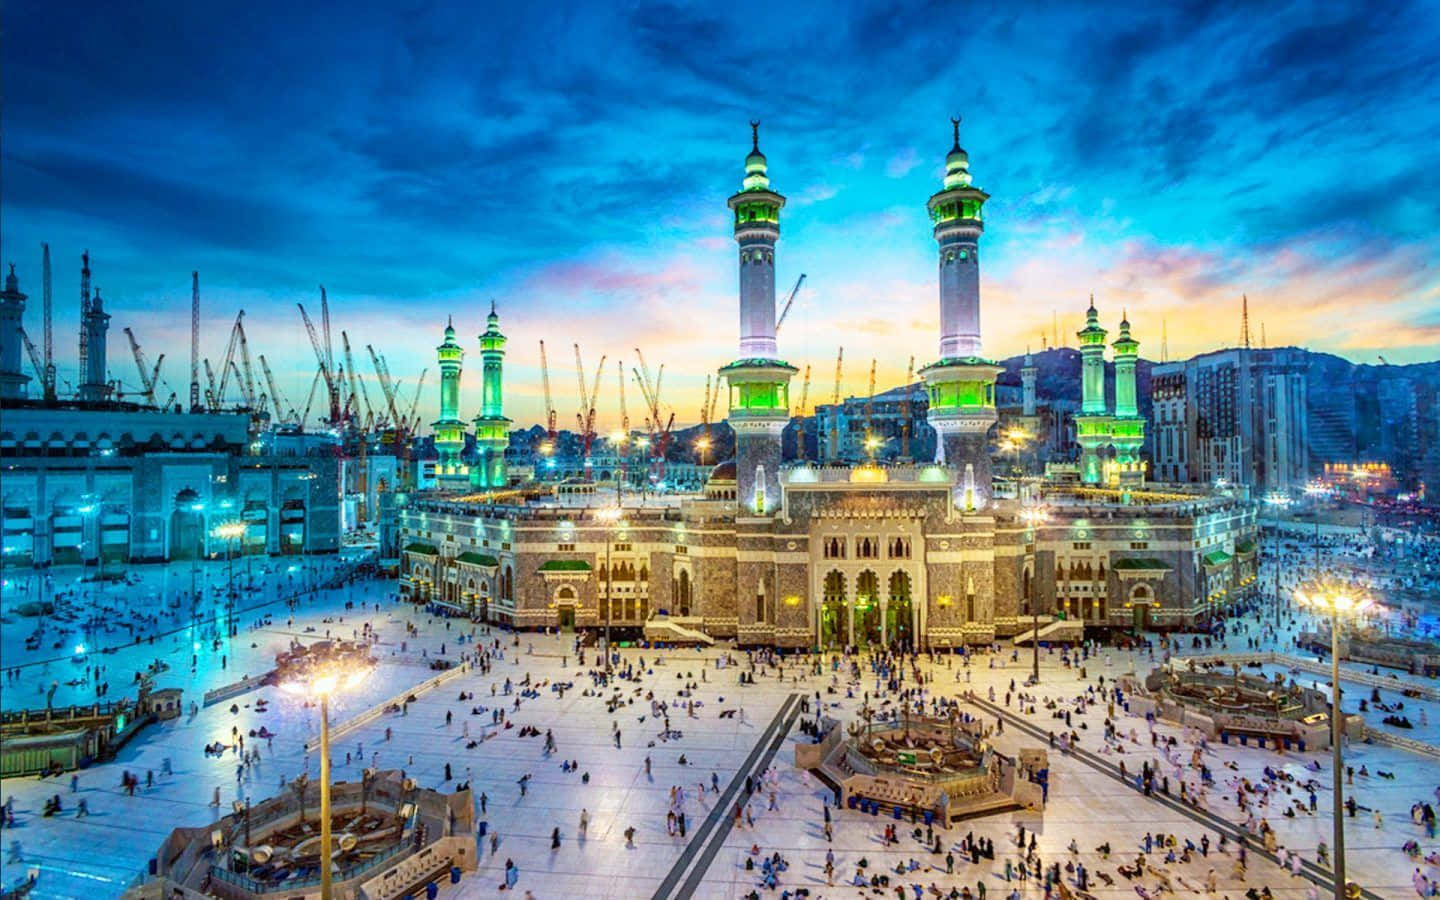 Holy Islamic site Makkah, Saudi Arabia, in all its glory